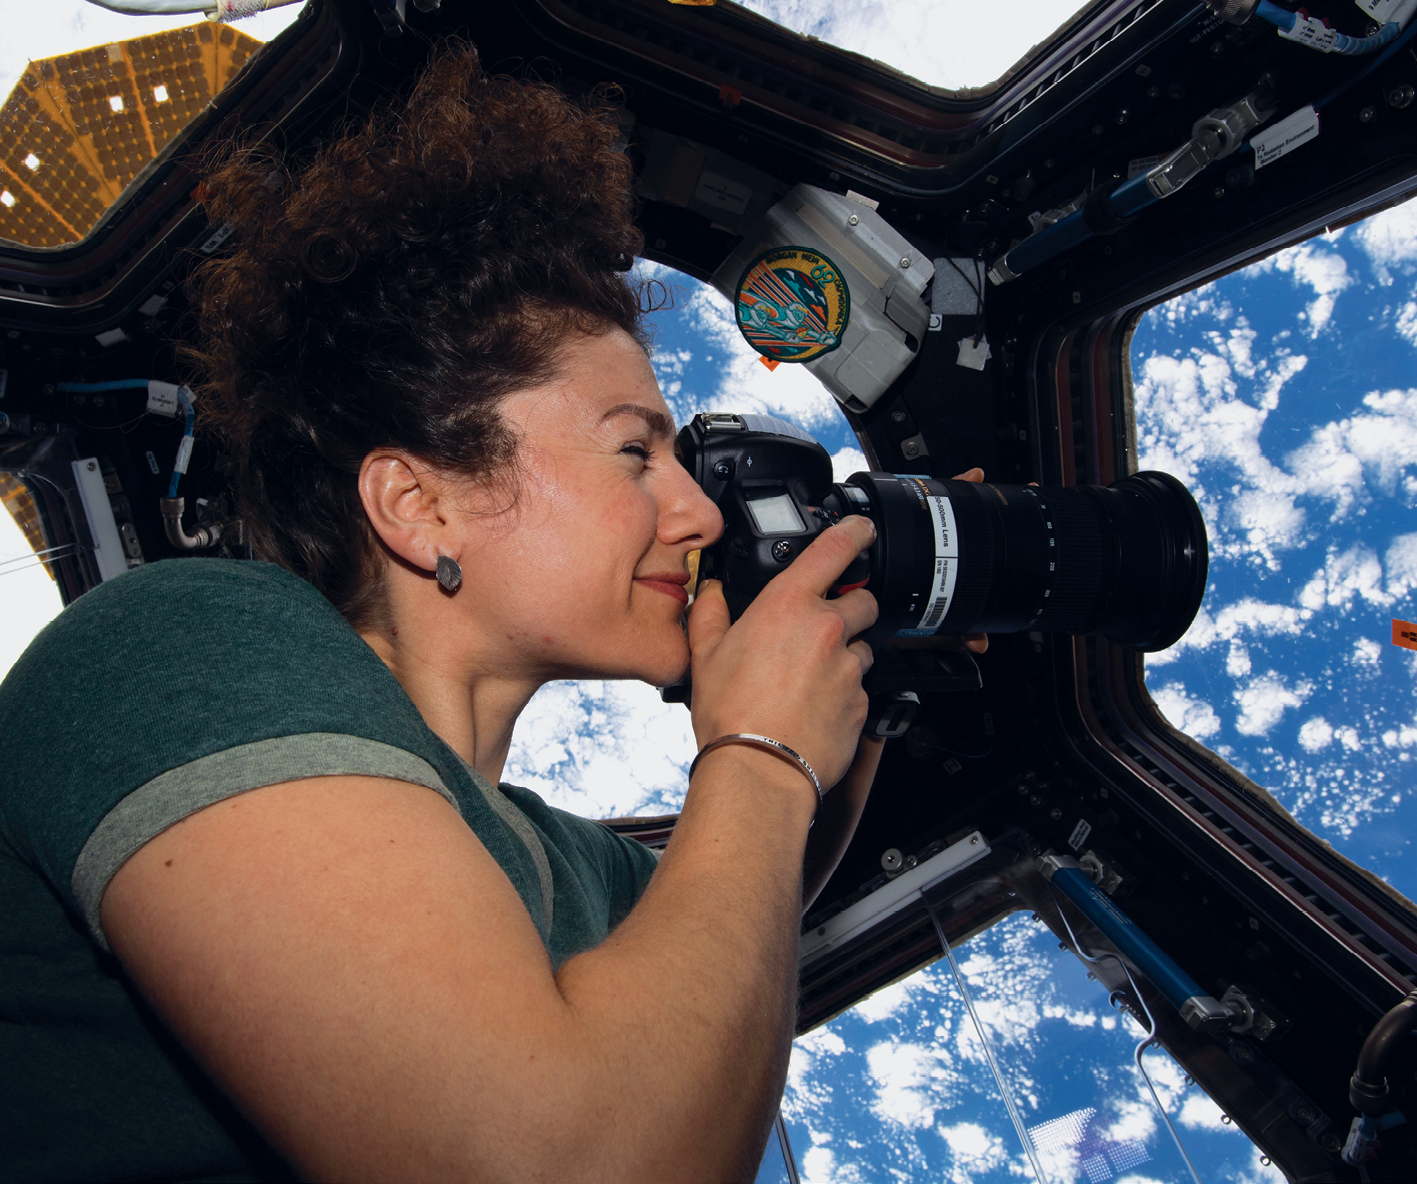 Fotografia. Uma mulher dentro de uma estação espacial, com as laterais feitas de diversas janelas de vidro. Ela é branca, tem cabelo encaracolado preso no alto da cabeça, segura uma máquina fotográfica próxima aos olhos e aponta a máquina para uma das janelas. Do lado de fora da estação há  diversas nuvens e céu azul.